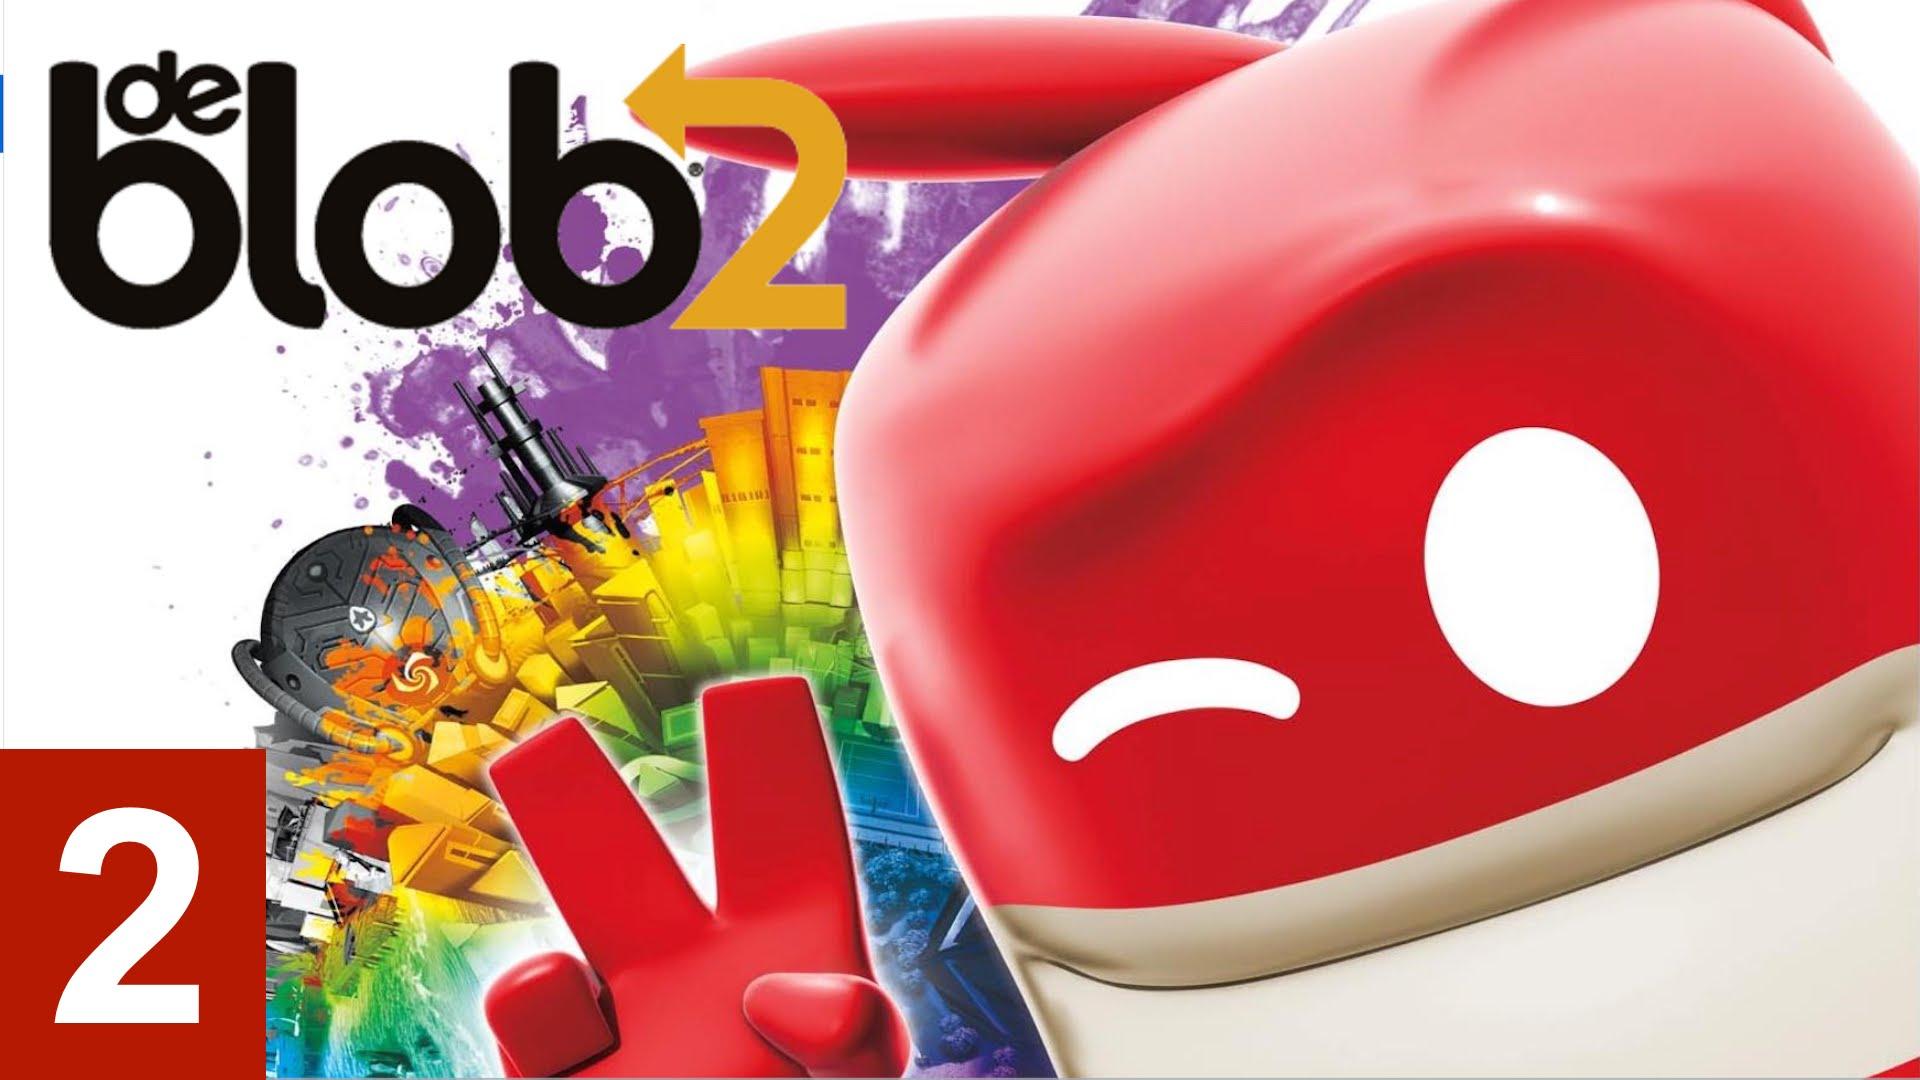 De Blob 2 2 Let's Play Walkthrough (XBOX360 PS3 )